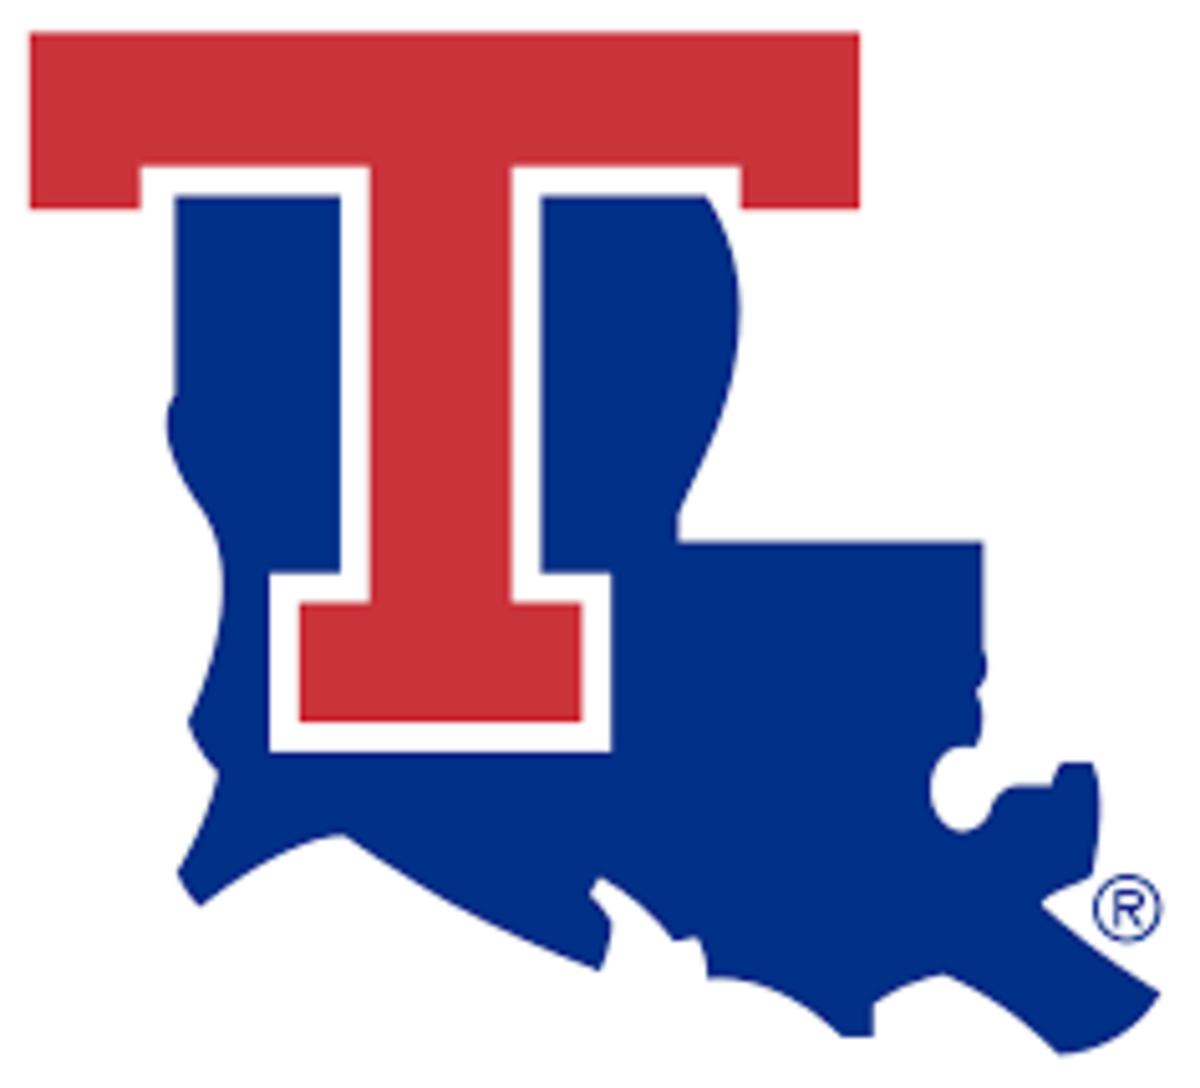 Louisiana Tech bulldogs logo